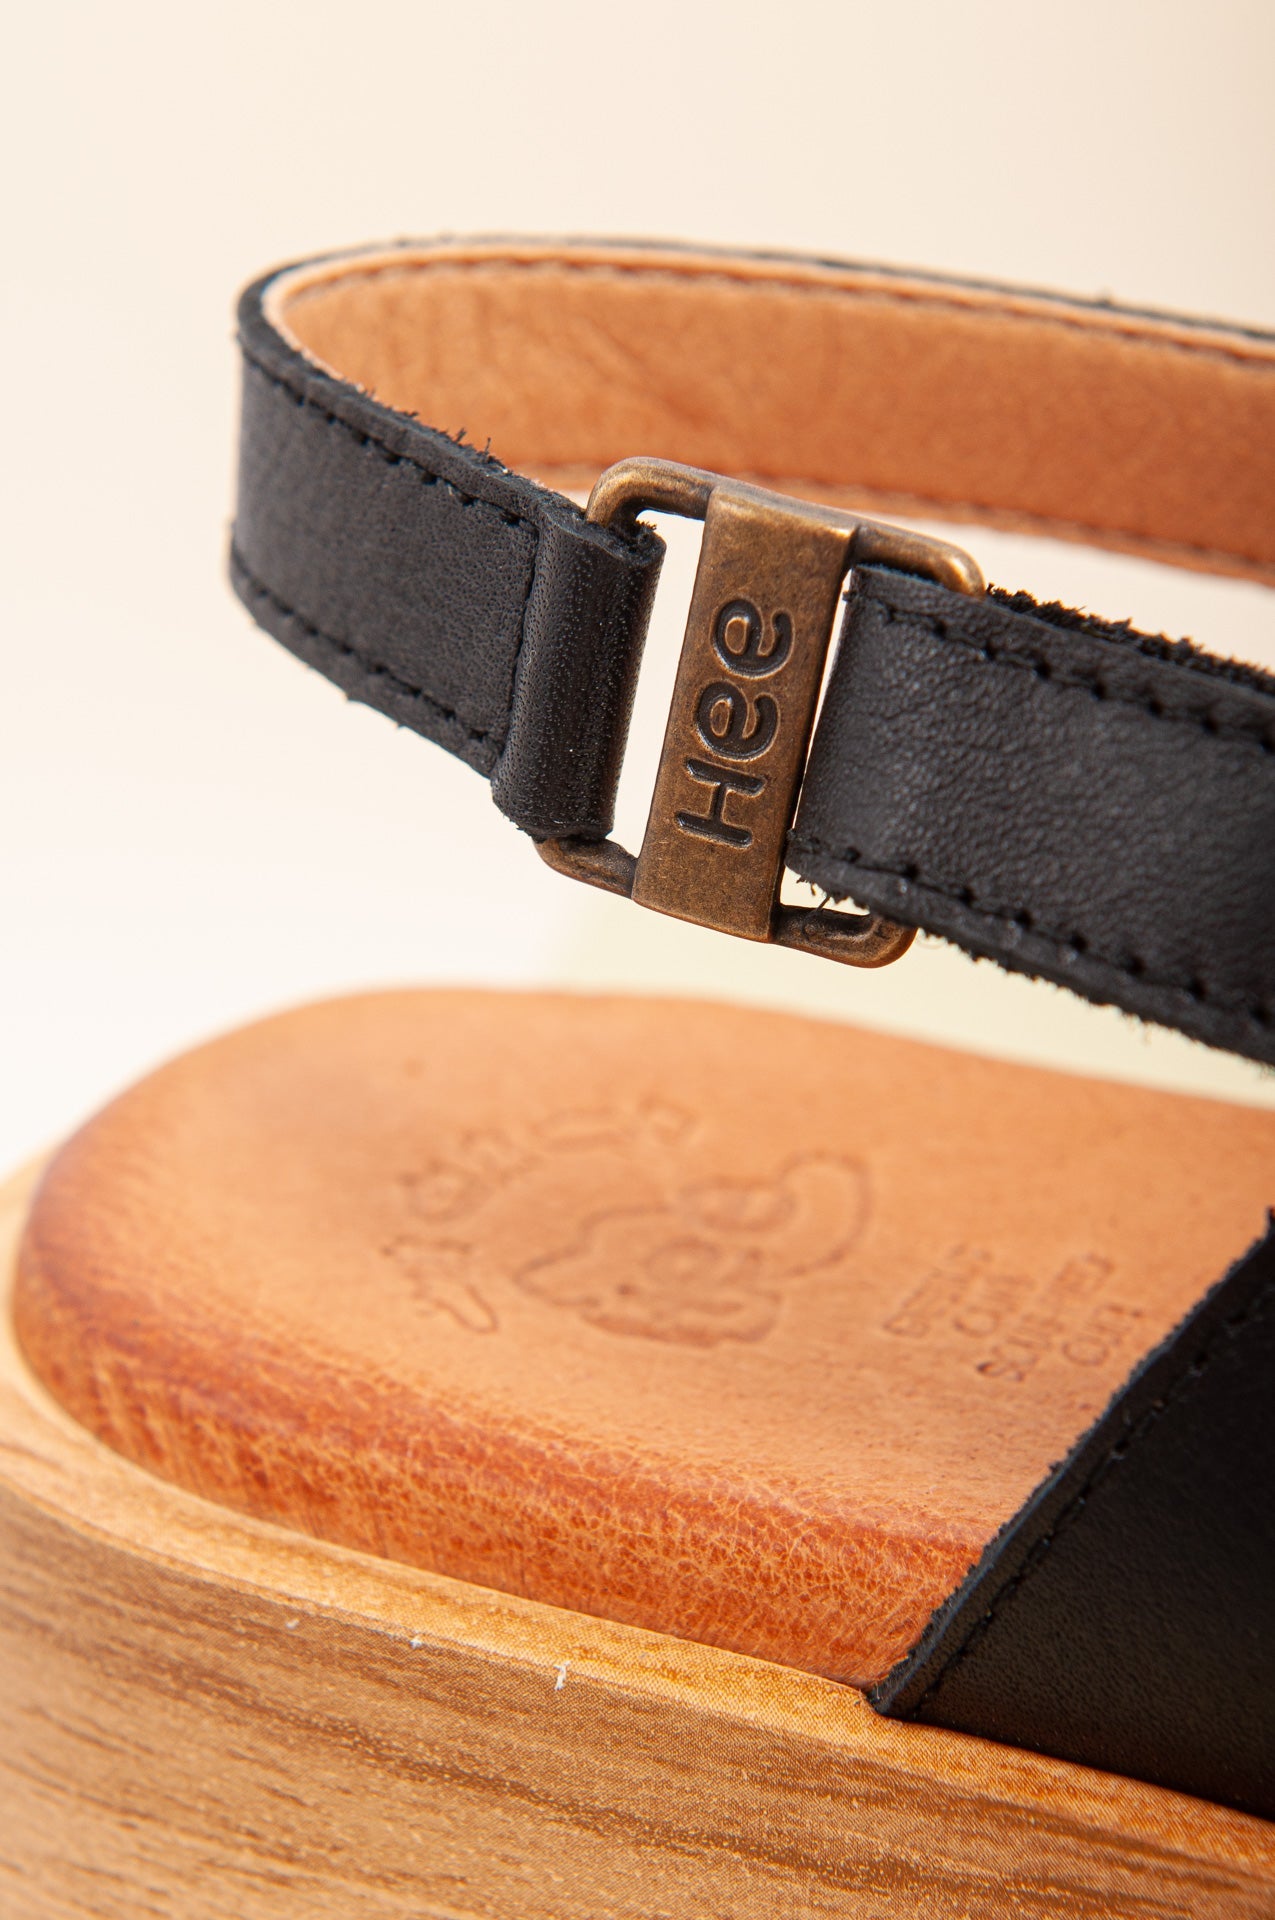 Sandalias negras de plataforma cómodas y ligeras. Sandalias ideales para usar todo el día.